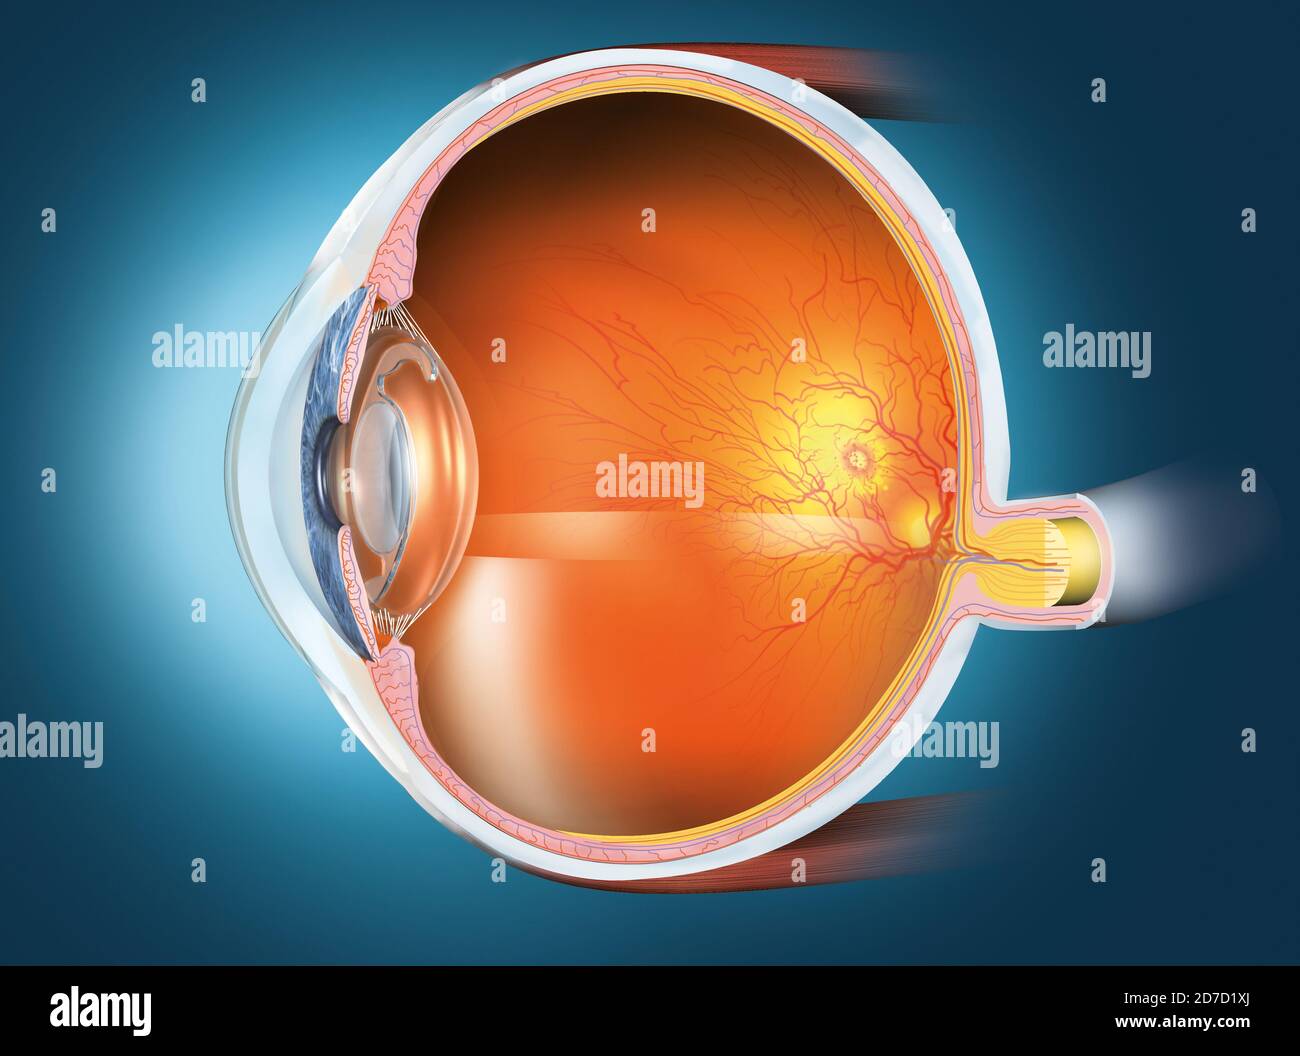 Illustrazione in 3D medica che mostra l'occhio umano con lente artificiale, retina, pupilla, iride, camera anteriore, camera posteriore, corpo ciliare, sfera oculare, bl Foto Stock